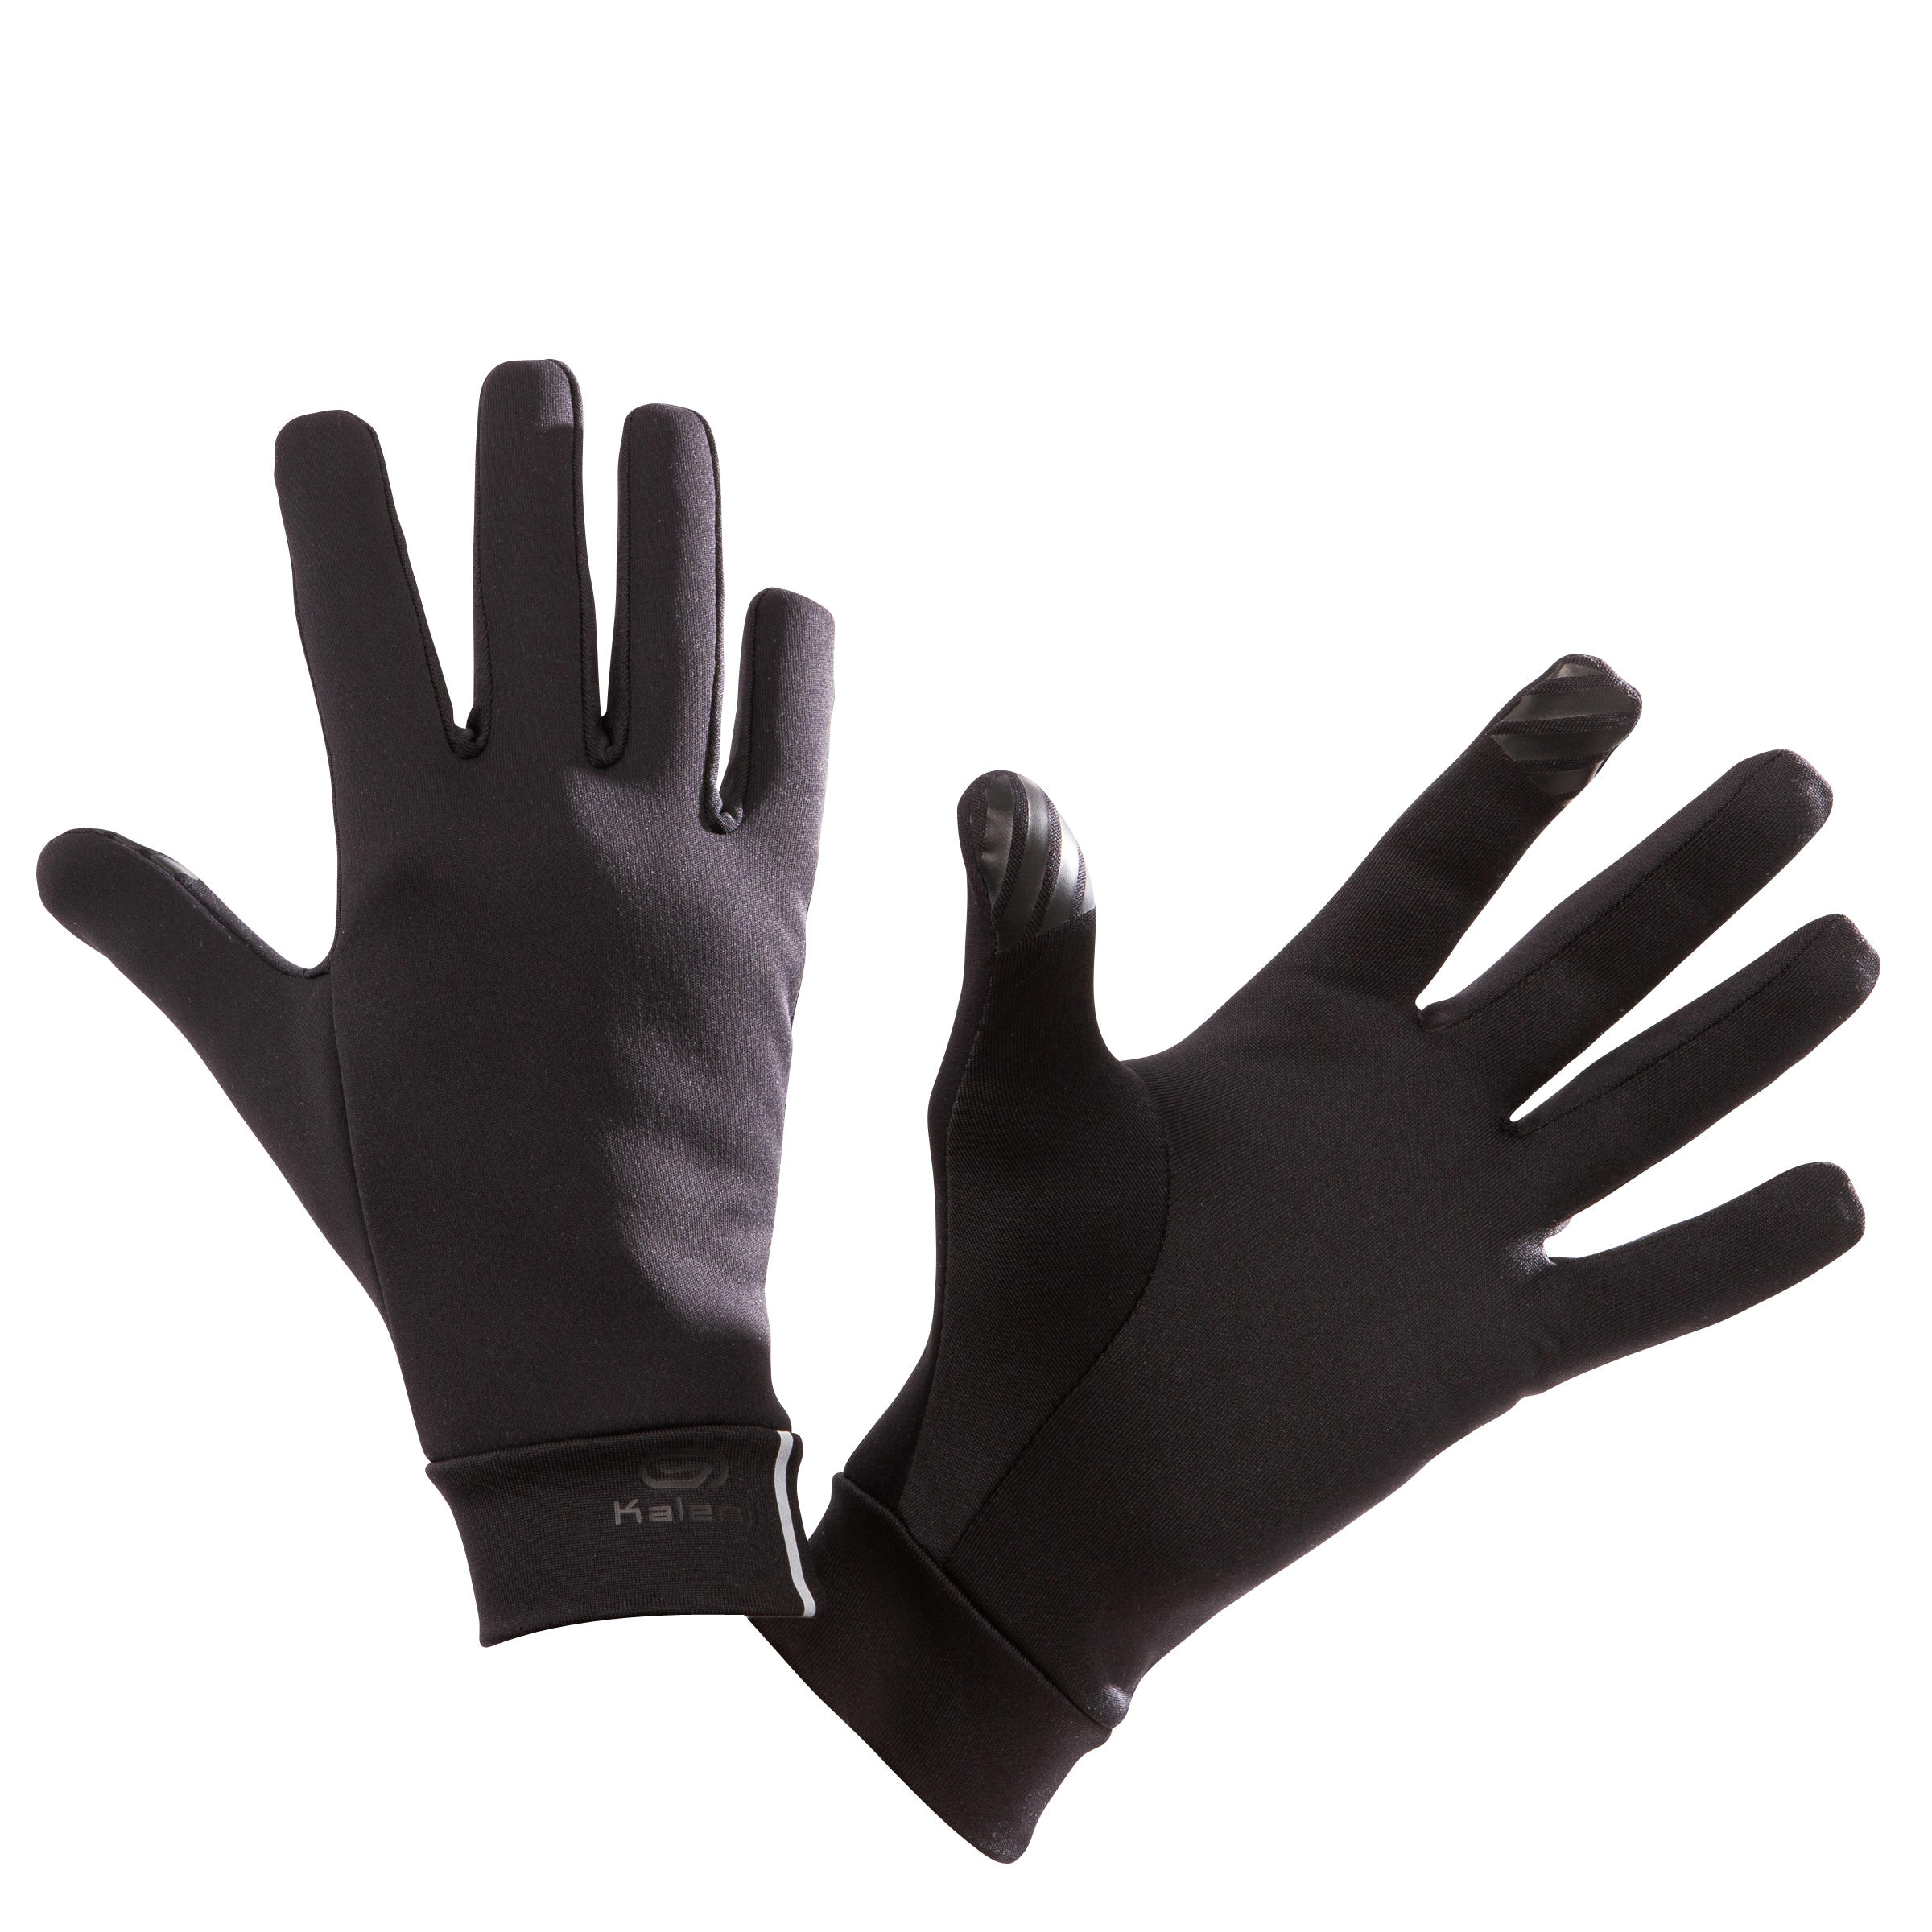 decathlon running gloves